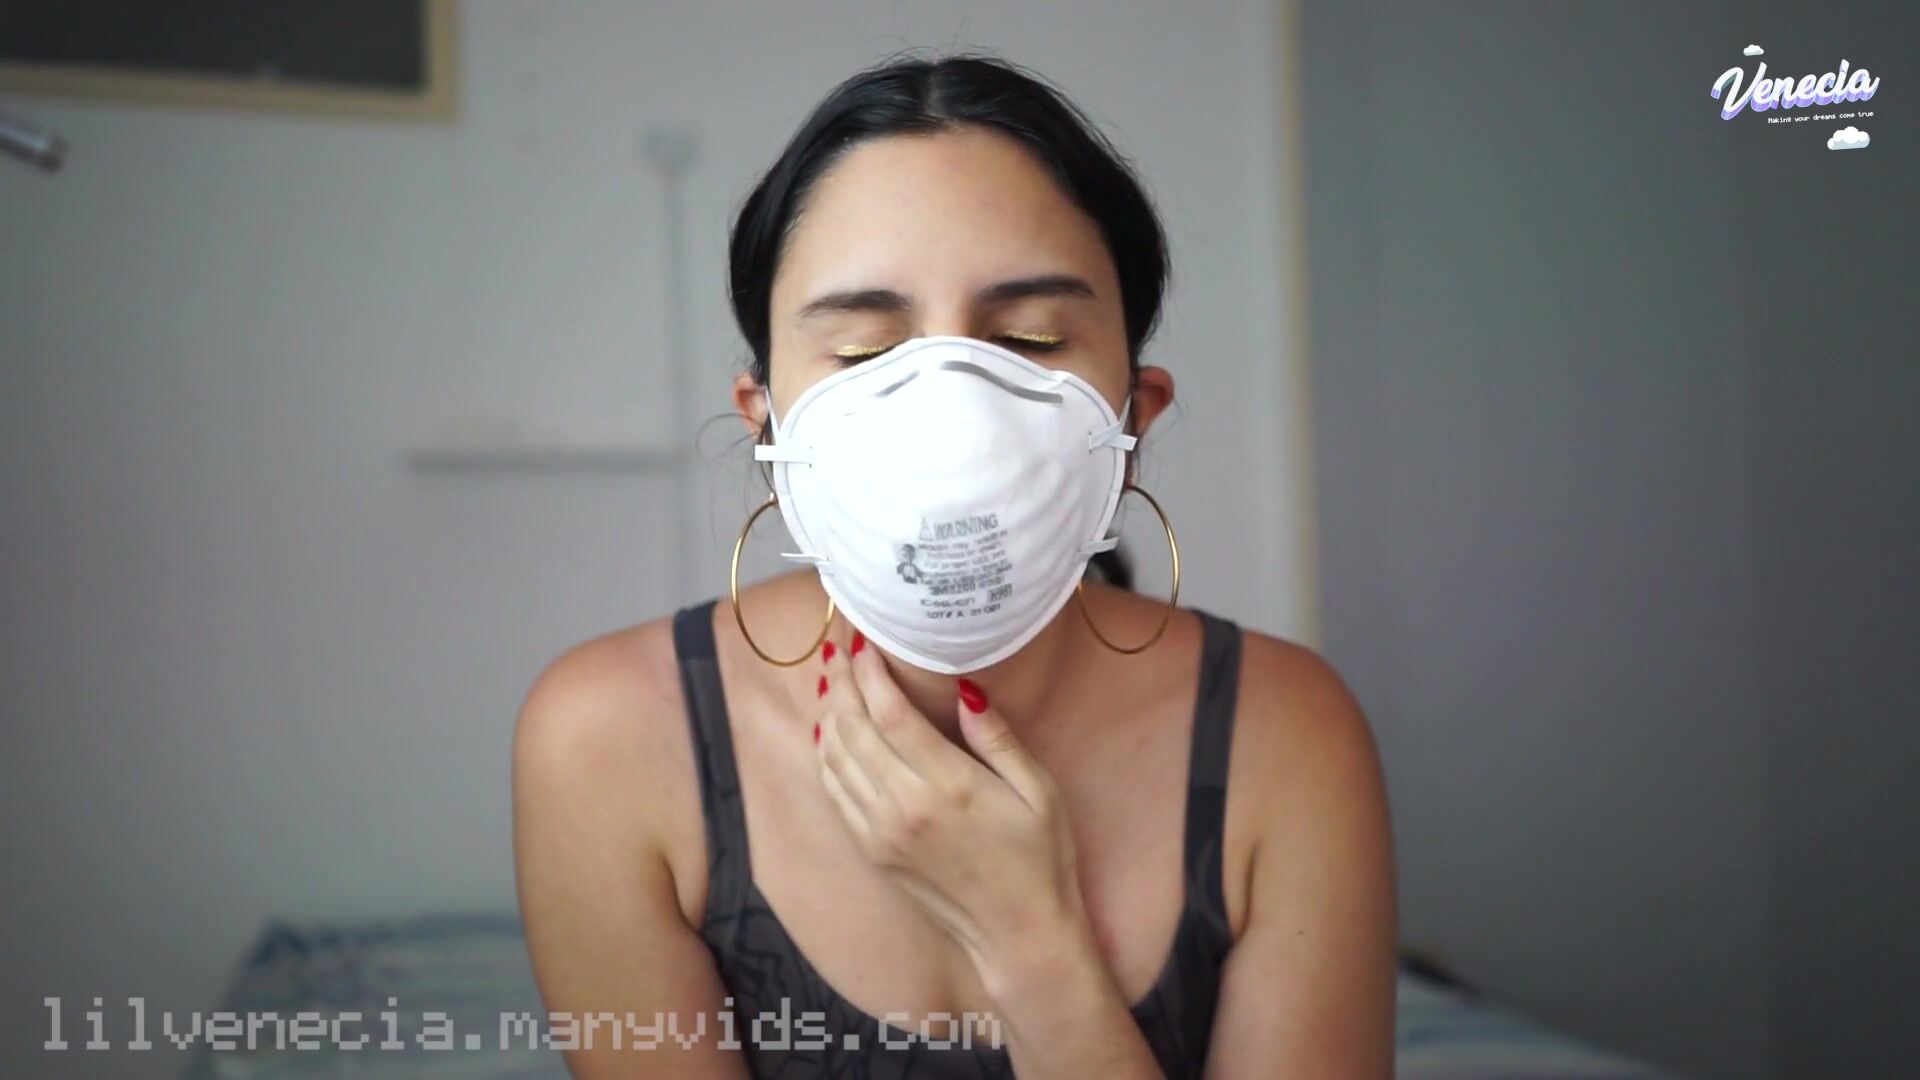 Cute Latina breath play in respirator - Thothub